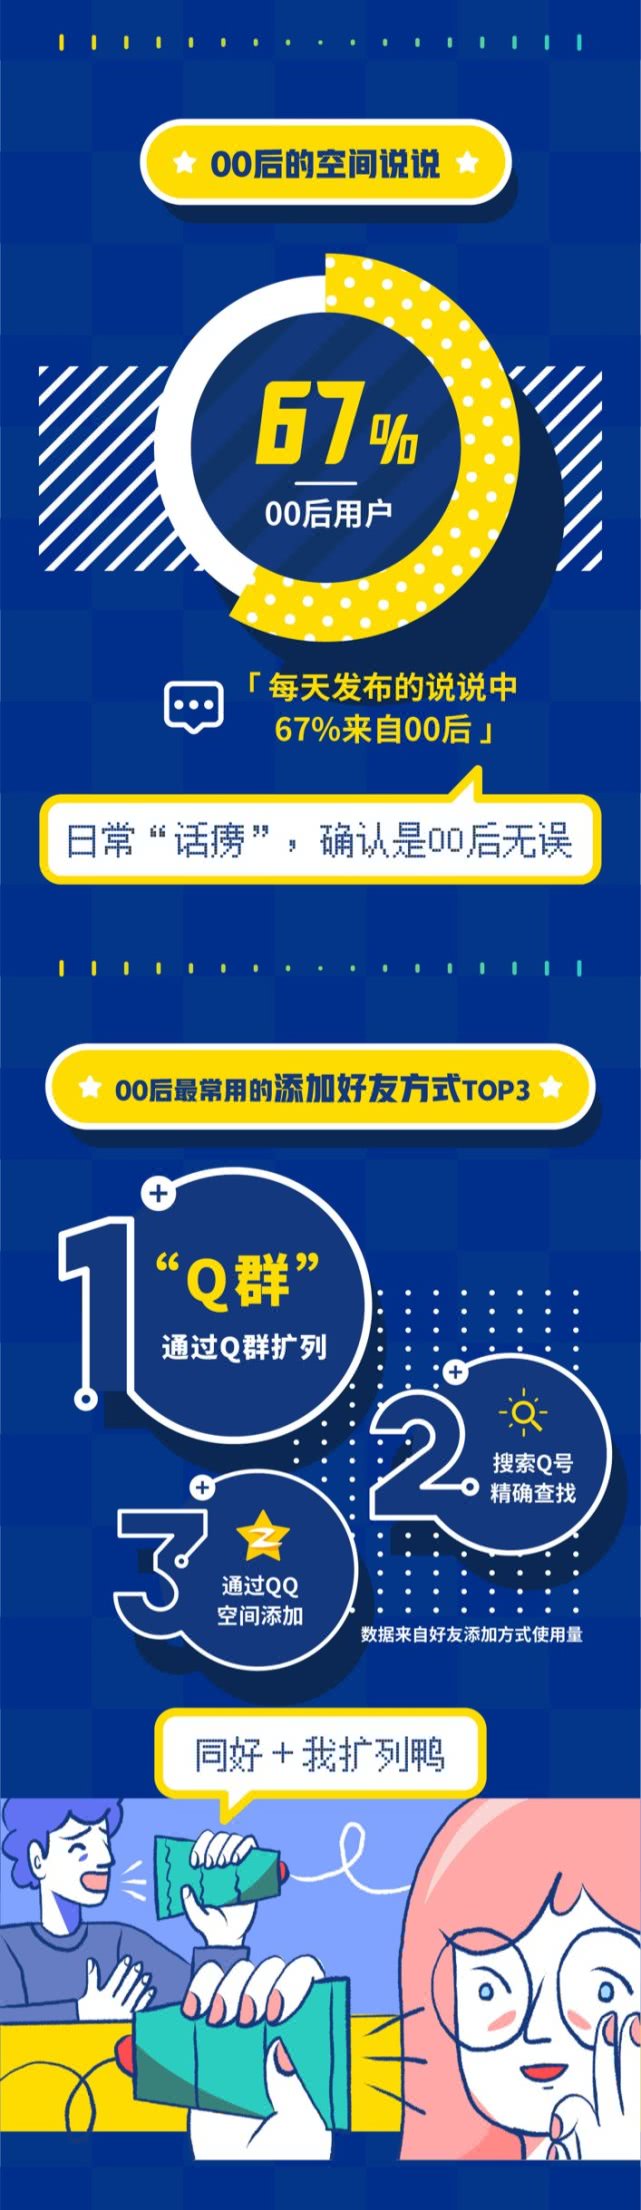 腾讯QQ发布《00后数据报告》：男生会员超七成